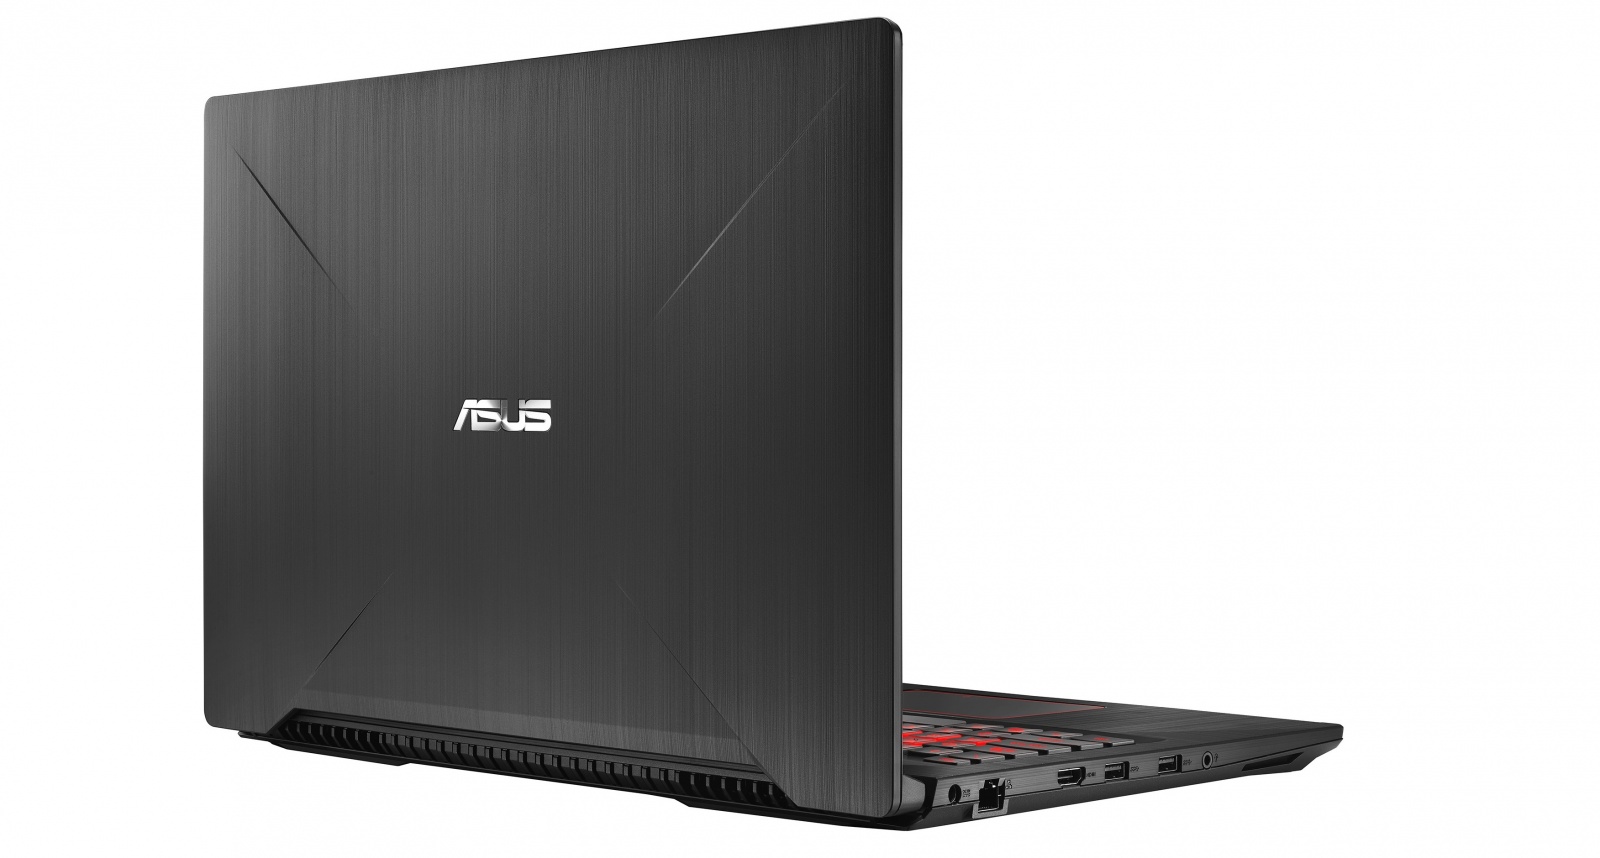 рекомендуем модель ноутбука ASUS FX503VD покупать в нашем магазине